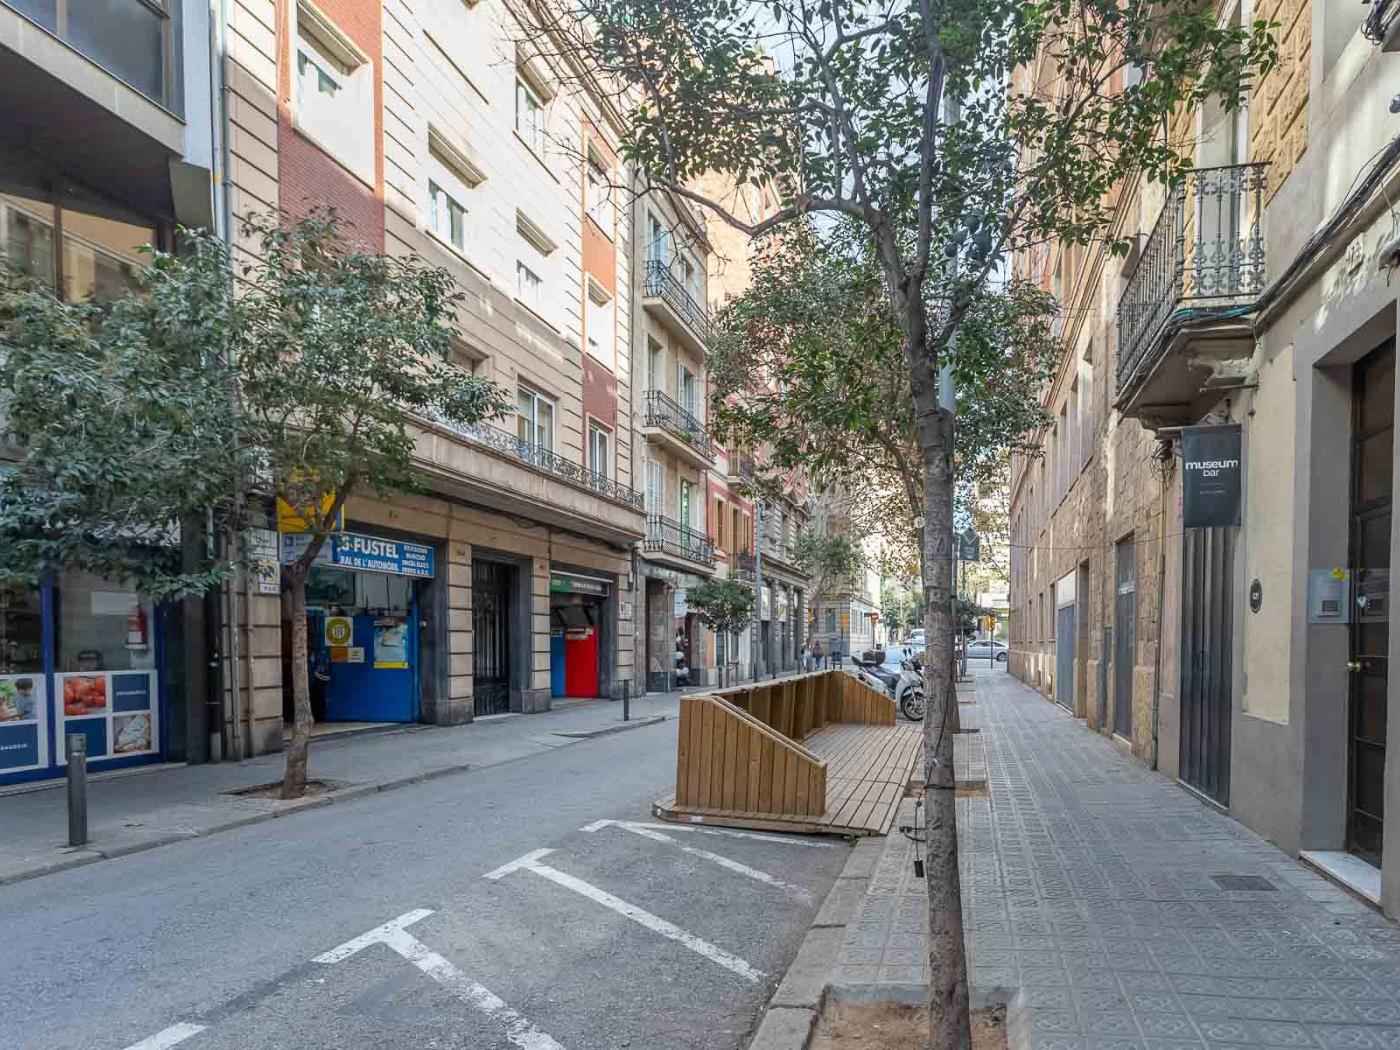 Appartamento con terrazza/giardino in comune molto vicino alla Clinica Barraquer - My Space Barcelona Appartamenti